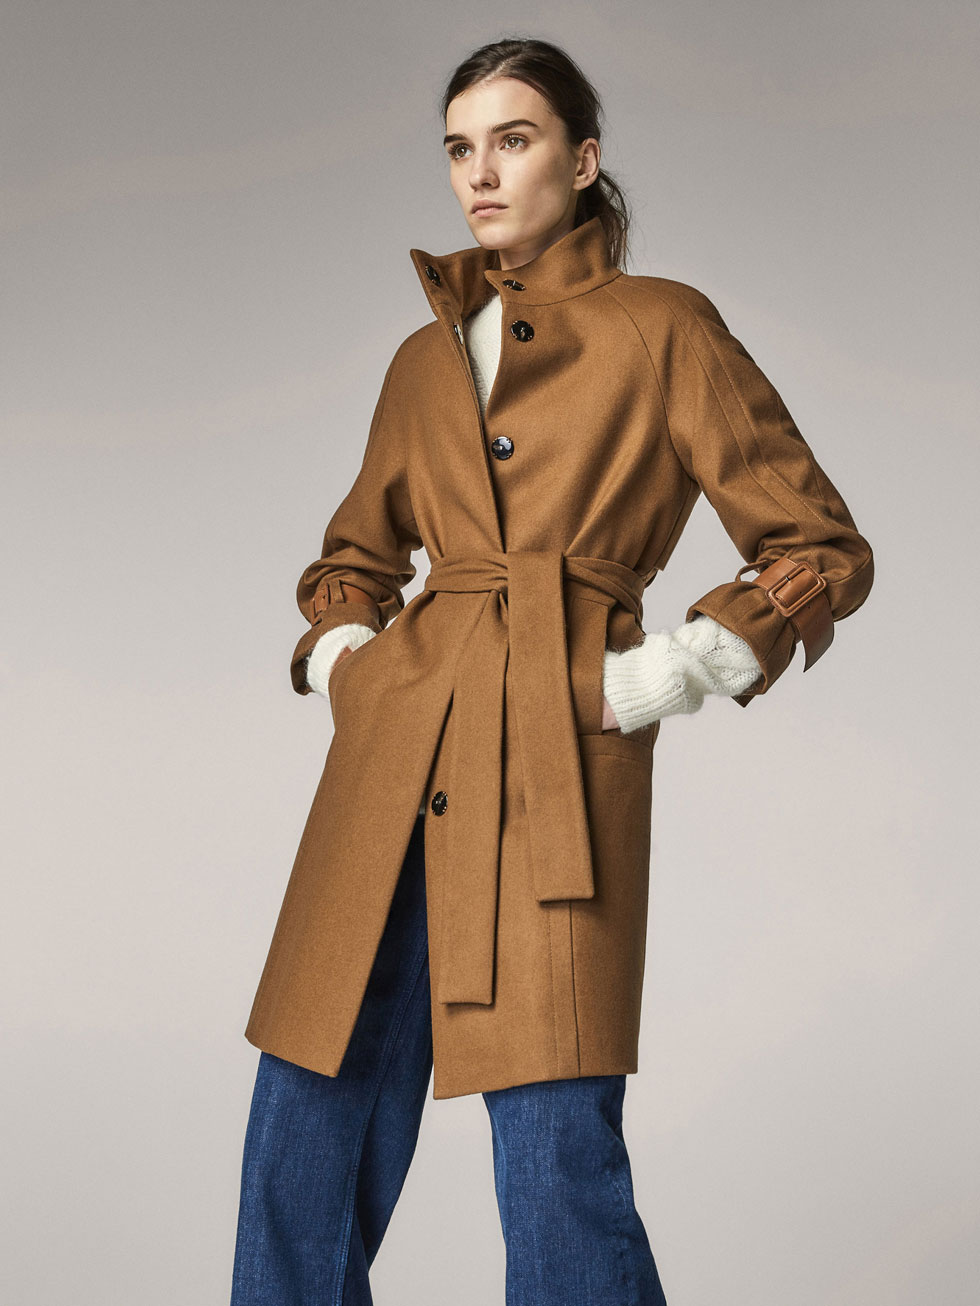 Massimo Dutti Season, en la colección de abrigos y chaquetas mujer 2018 - Modalia.es